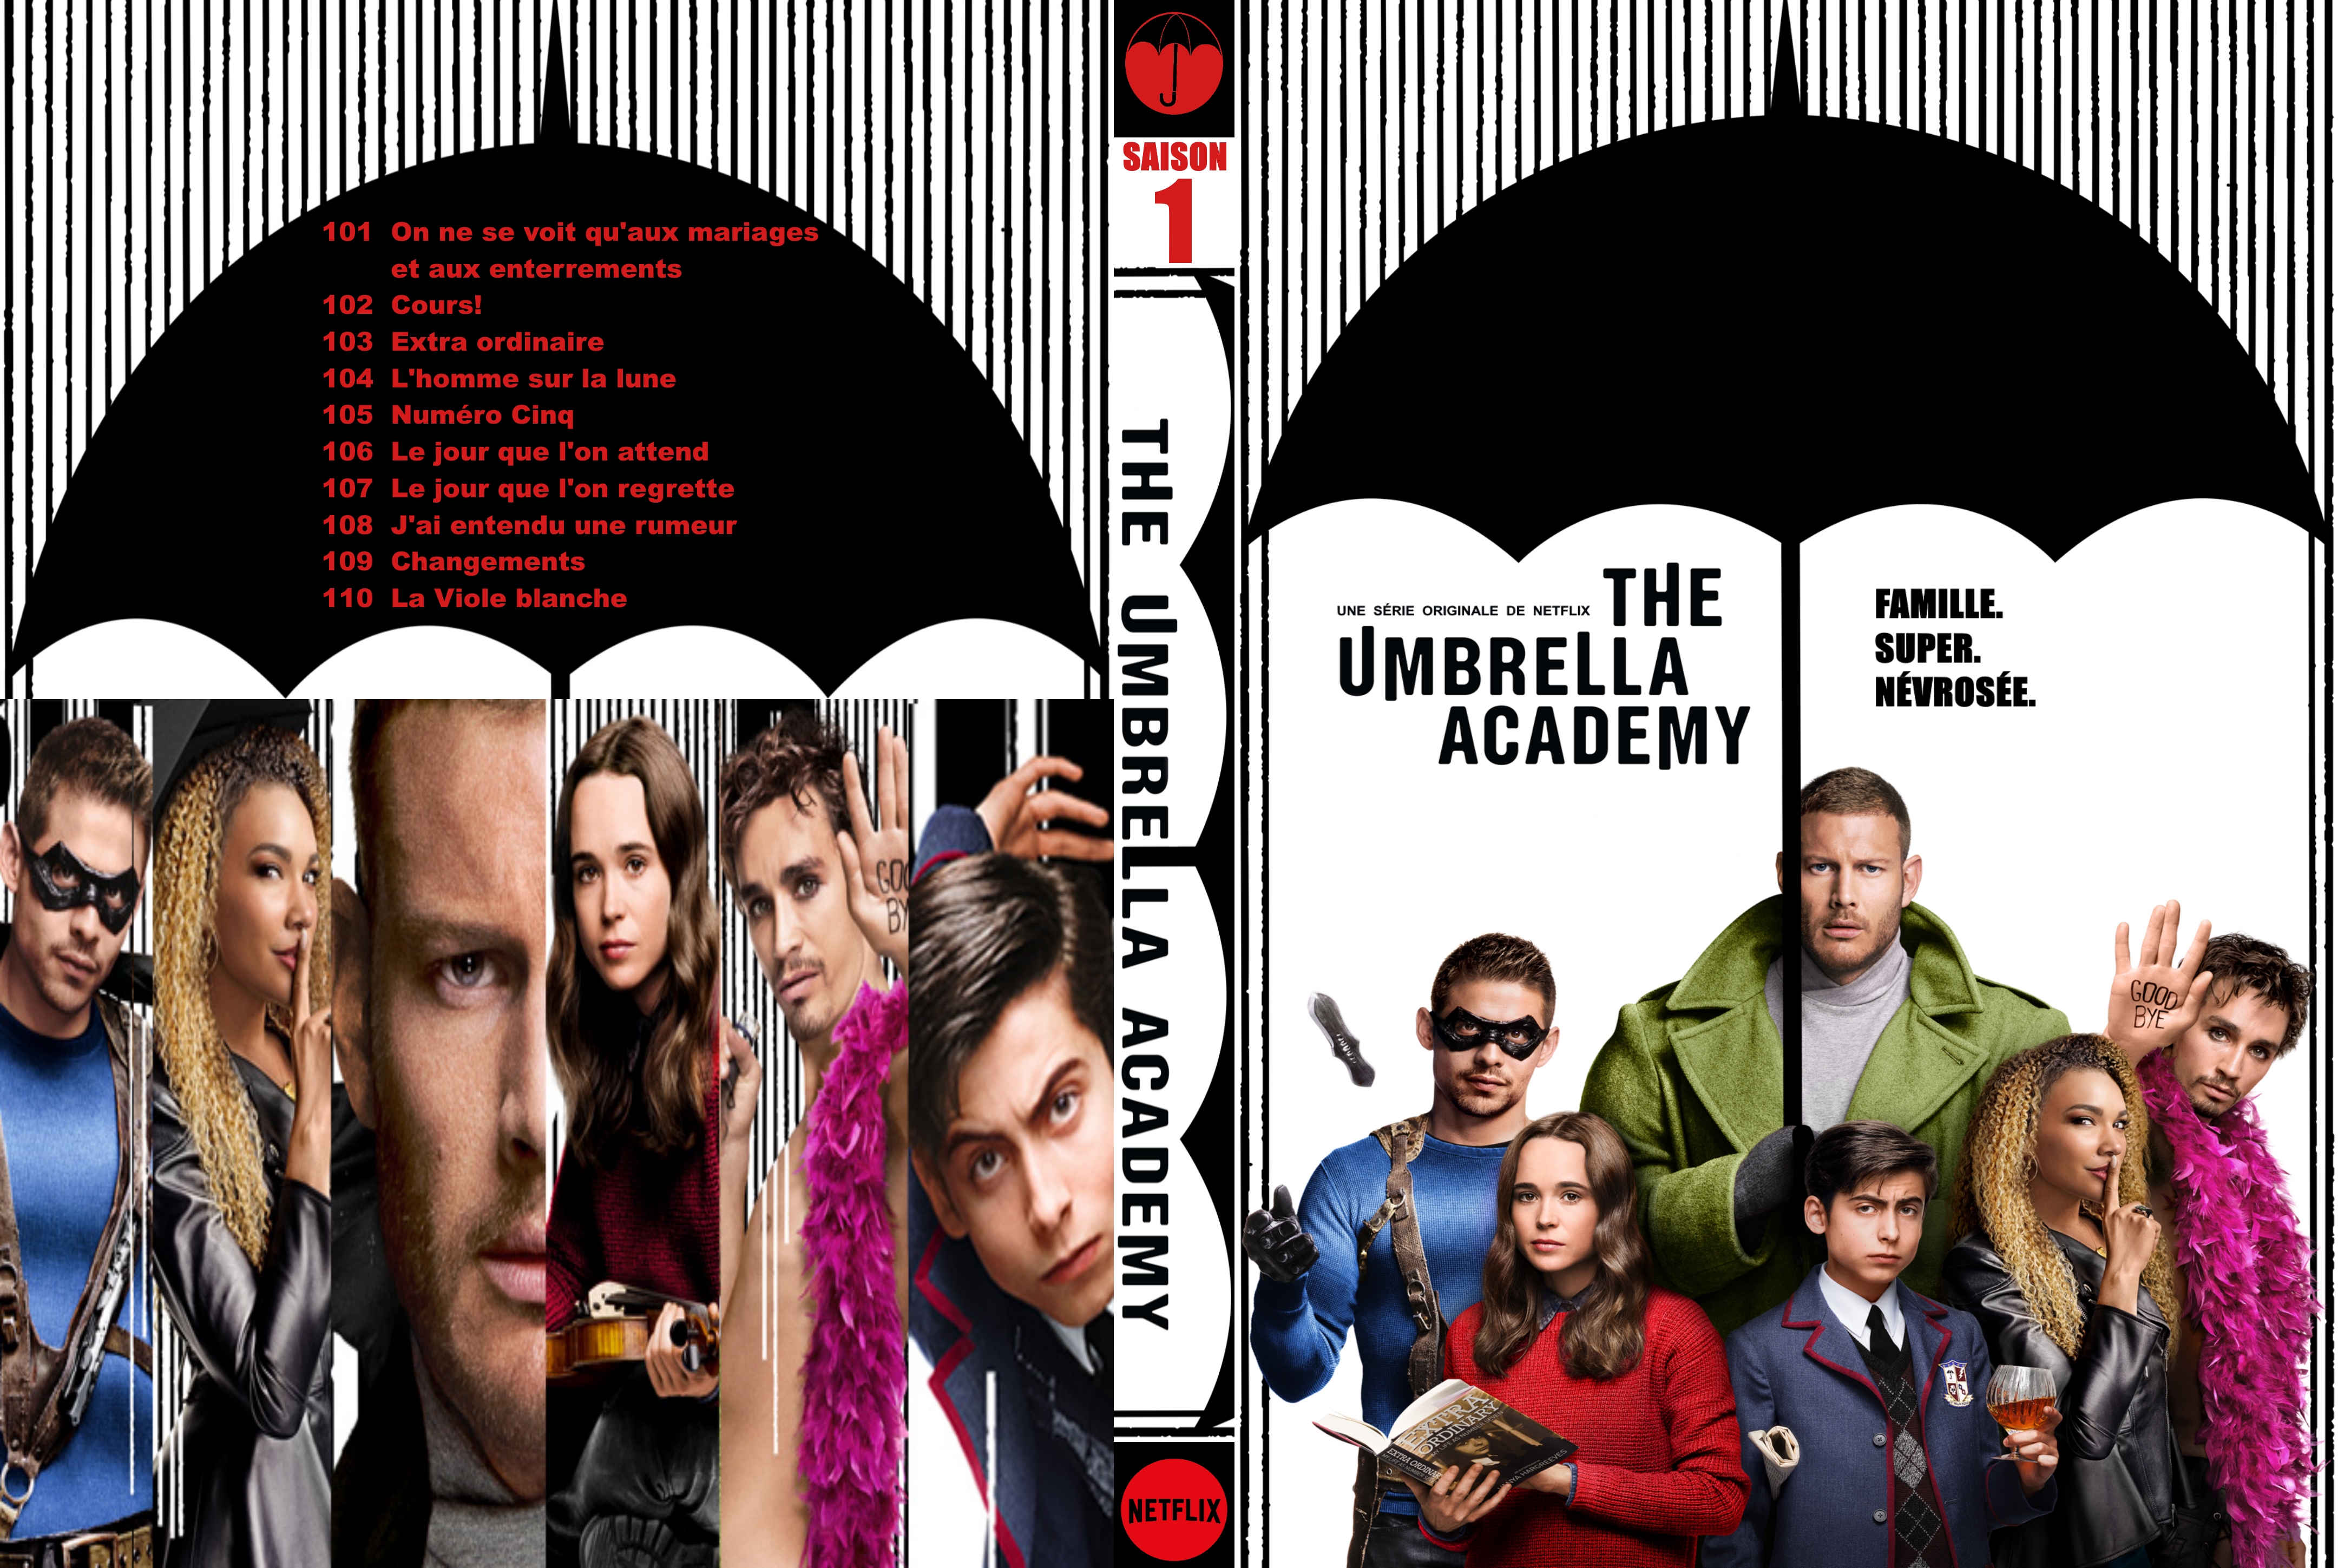 Jaquette DVD The Umbrella Academy Saison 1 custom.